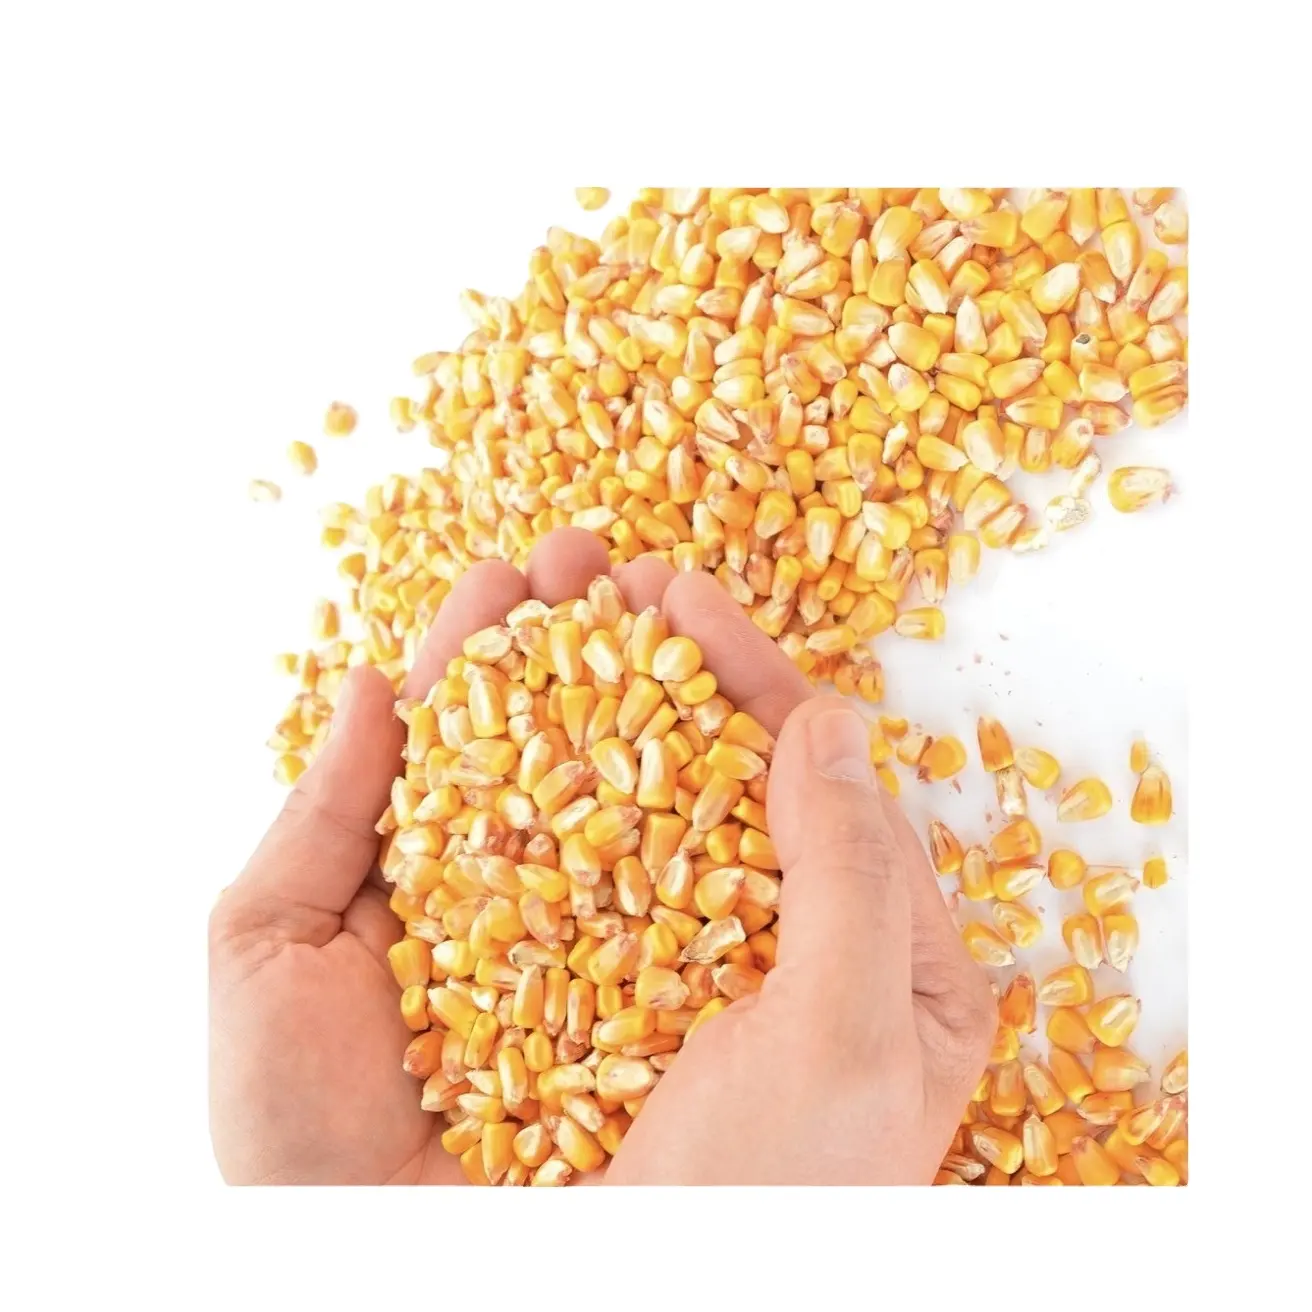 Grains de maïs soufflé, graines séchées, maïs jaune, maïs, maïs, graines d'aliments pour animaux, maïs jaune